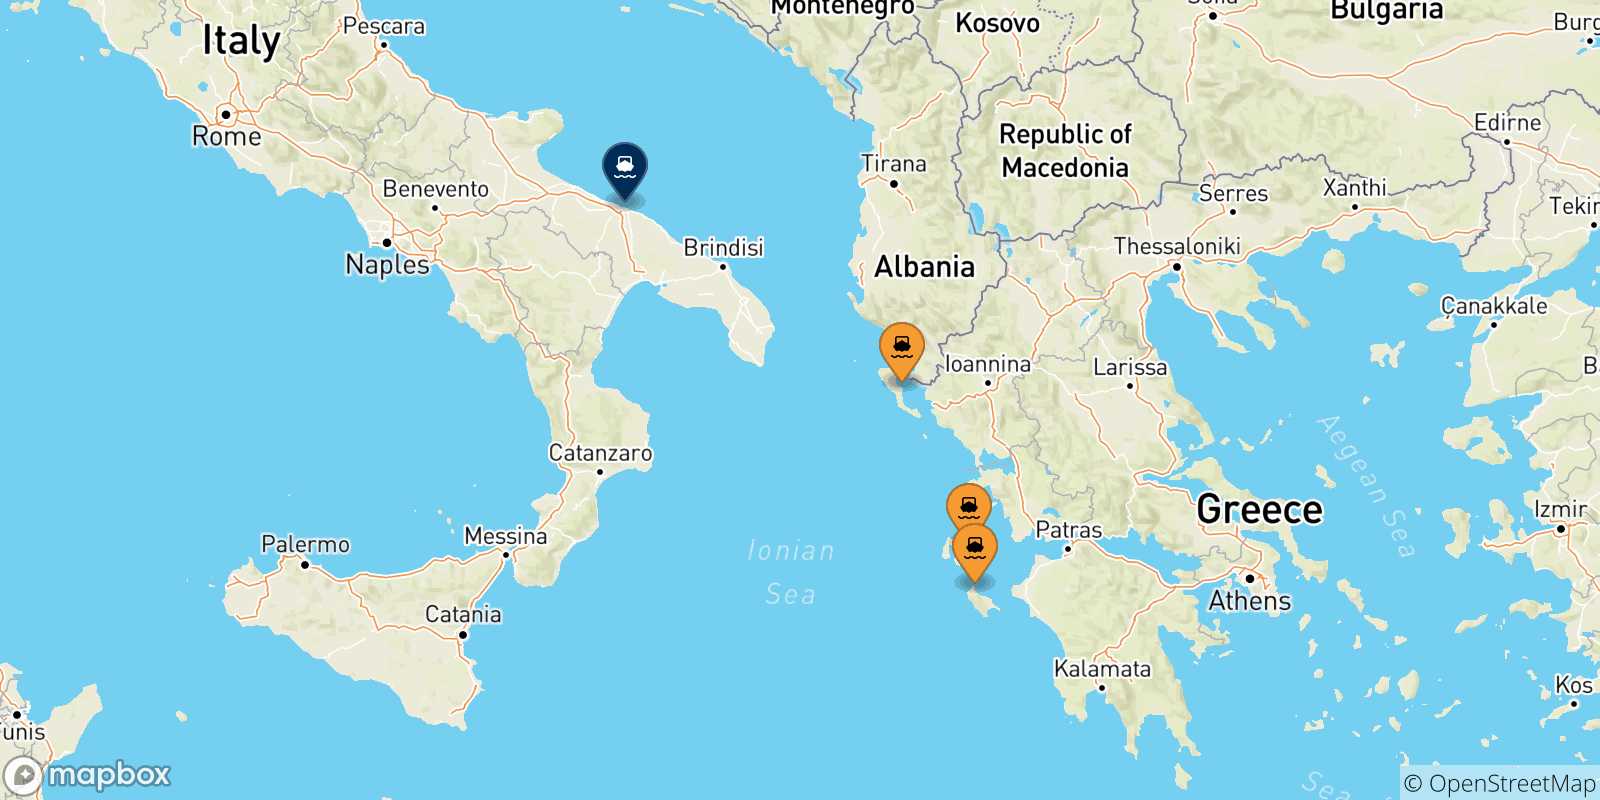 Mappa delle possibili rotte tra le Isole Ionie e Bari